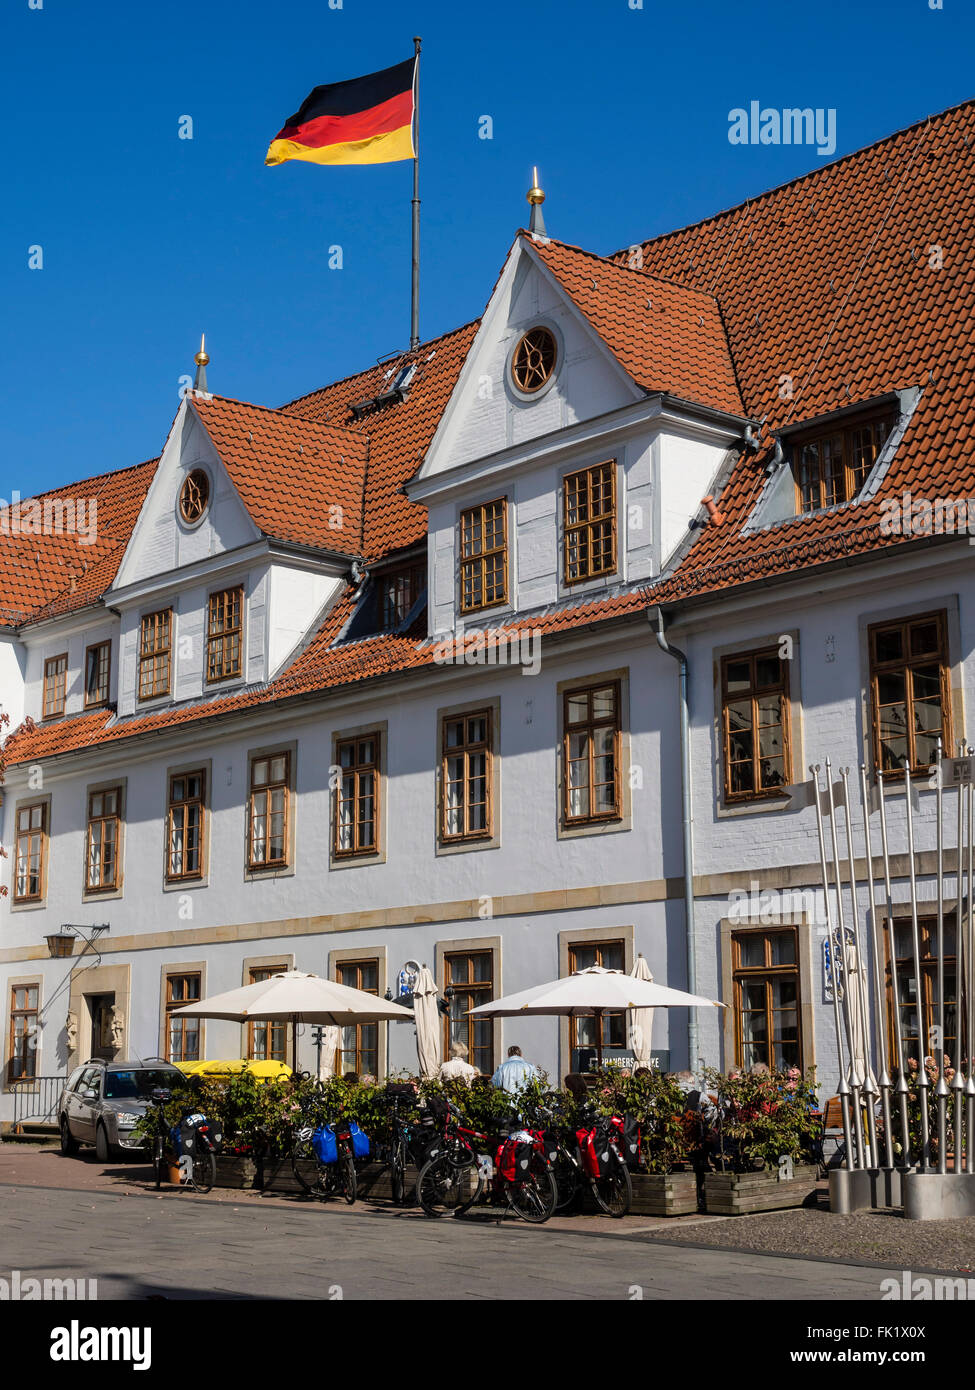 Radfahrer sitzt außerhalb des alten Rathauses, vor Restaurant, Celle, Deutschland Stockfoto